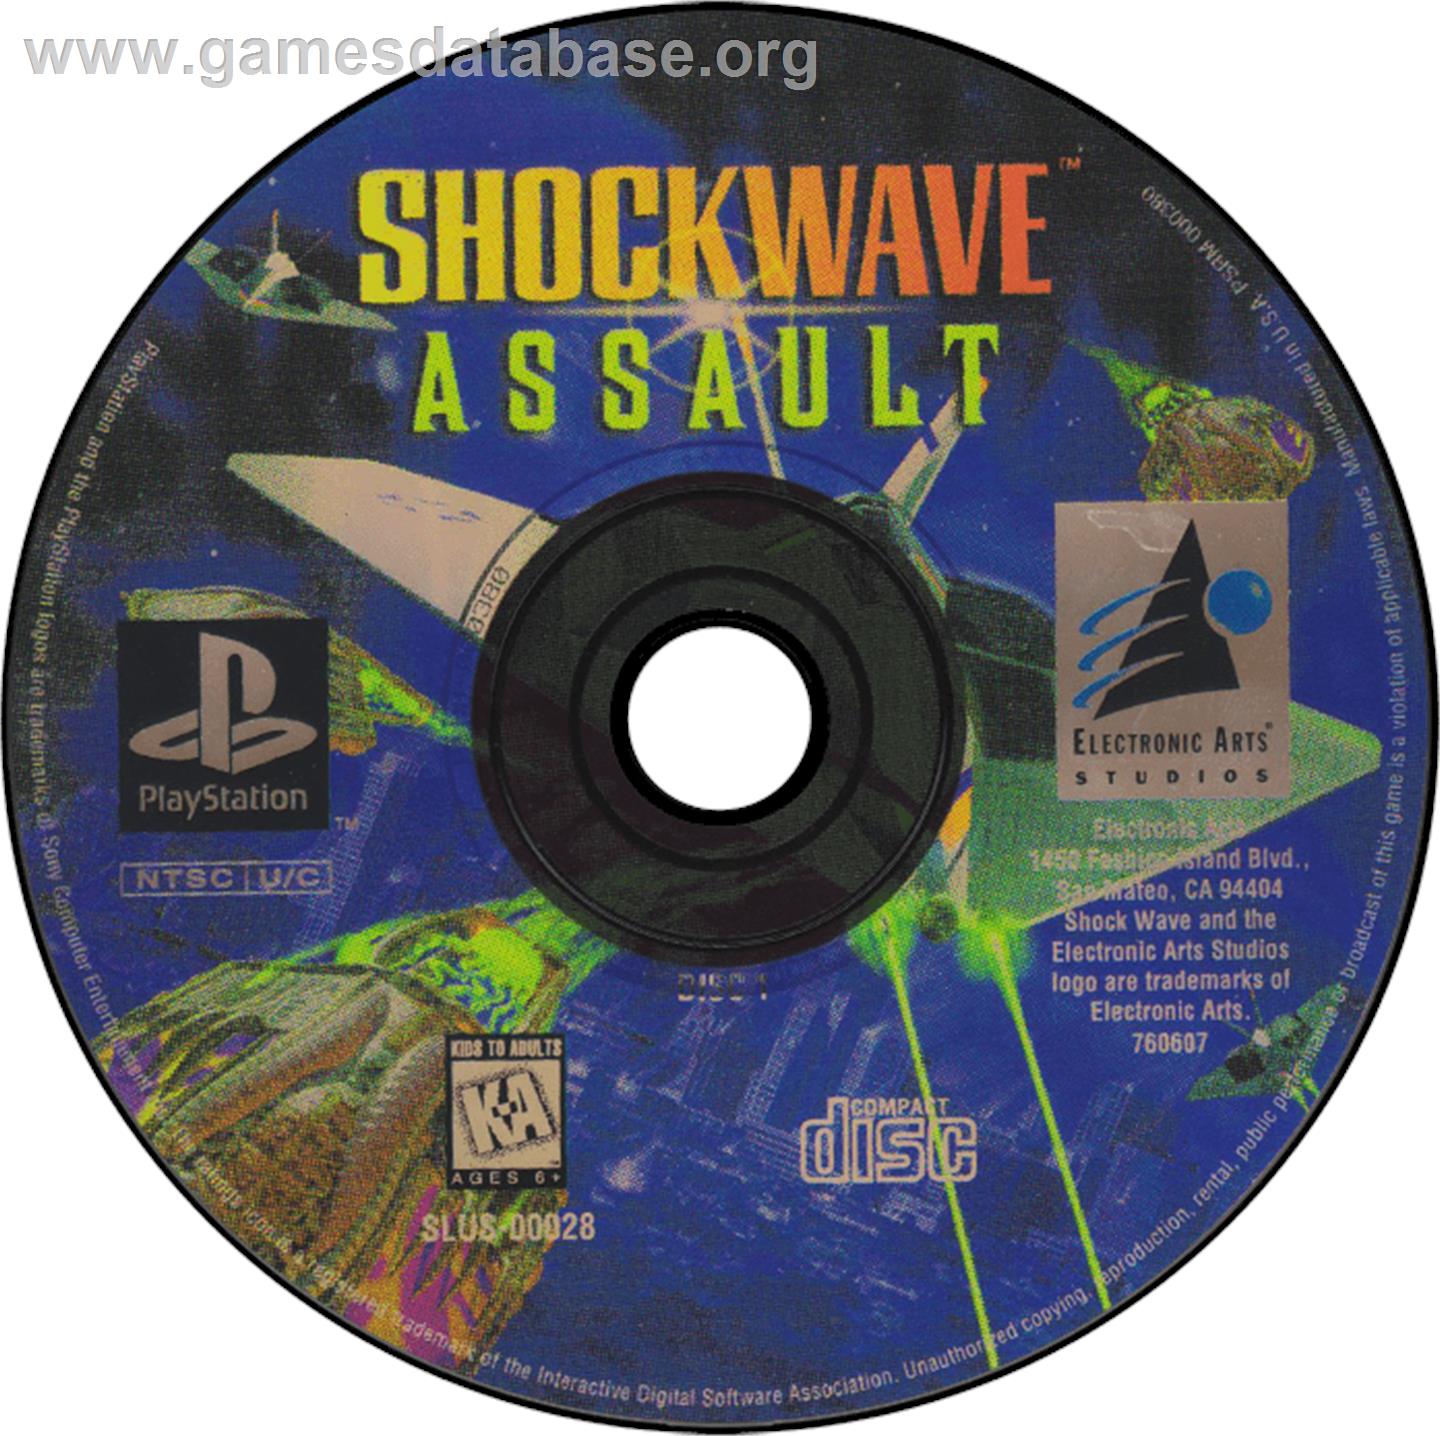 Shockwave Assault - Sony Playstation - Artwork - Disc